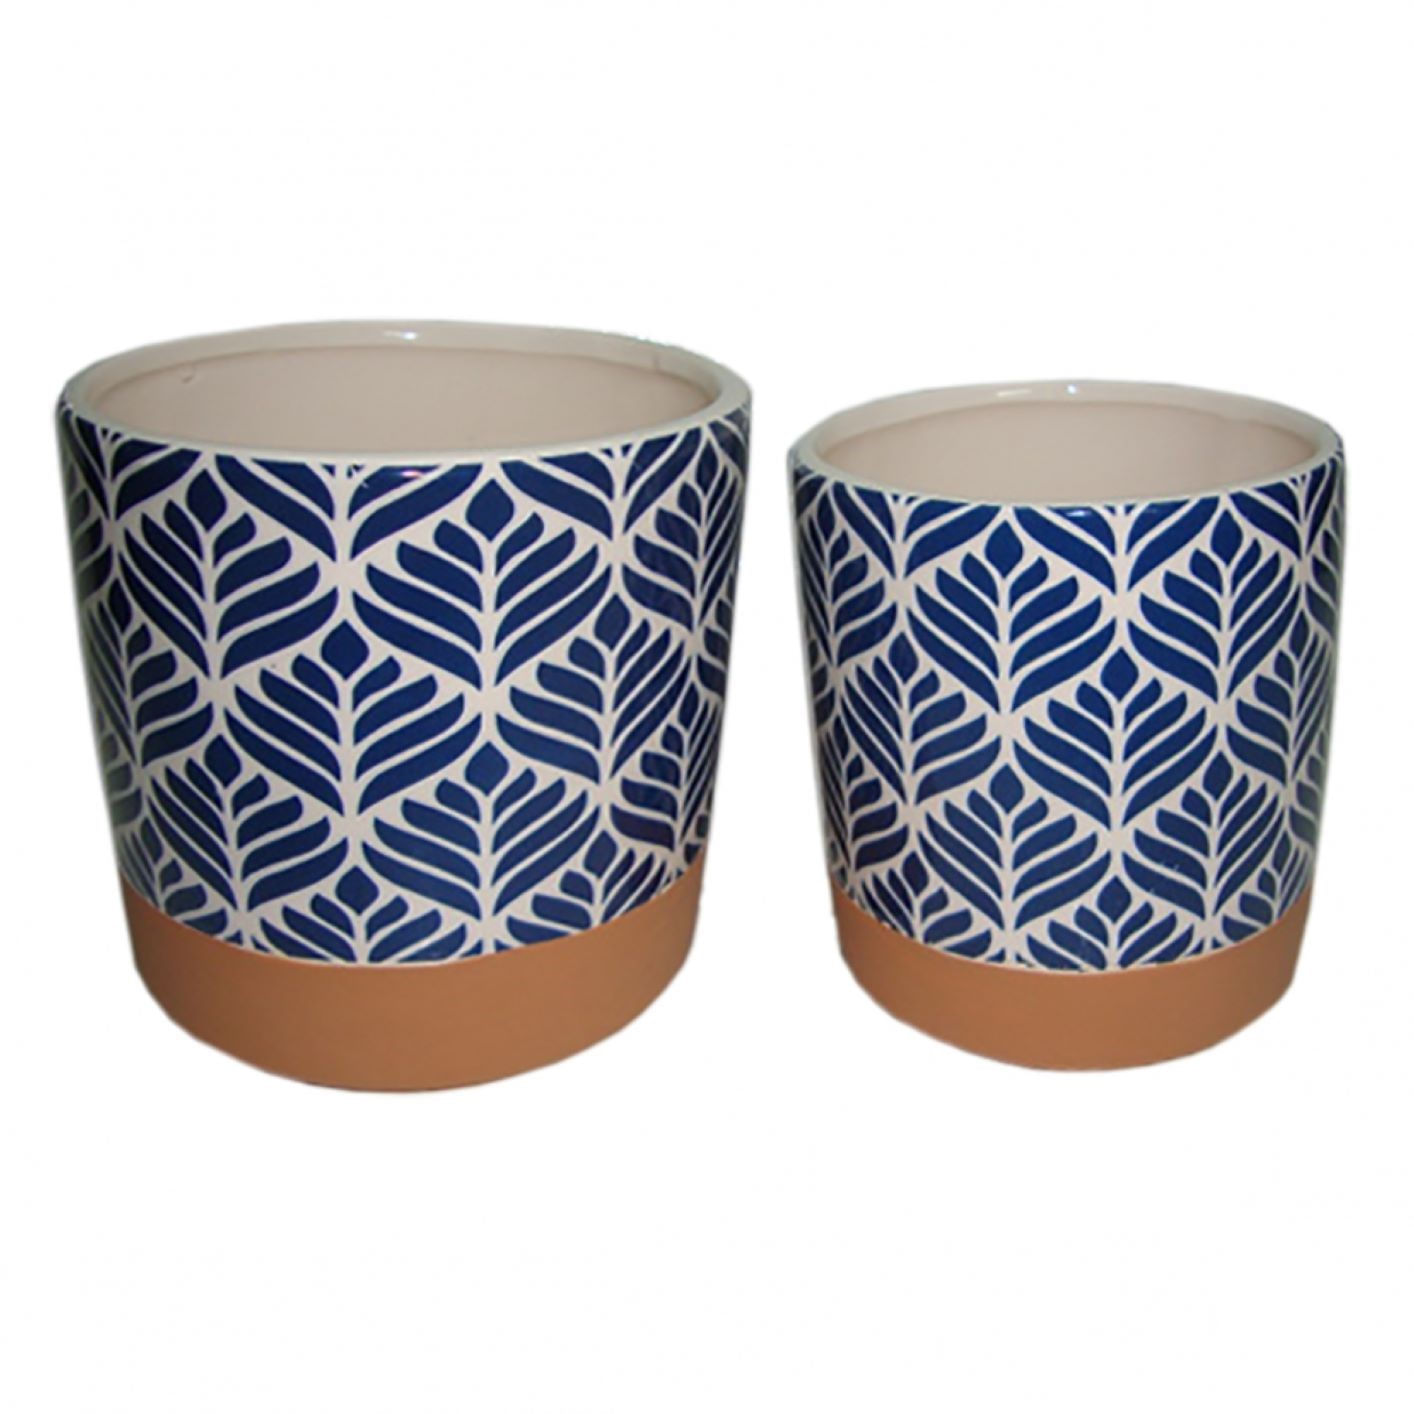 Cachepots / Vasinhos De Cerâmica Terracota e Azul (2 Peças)